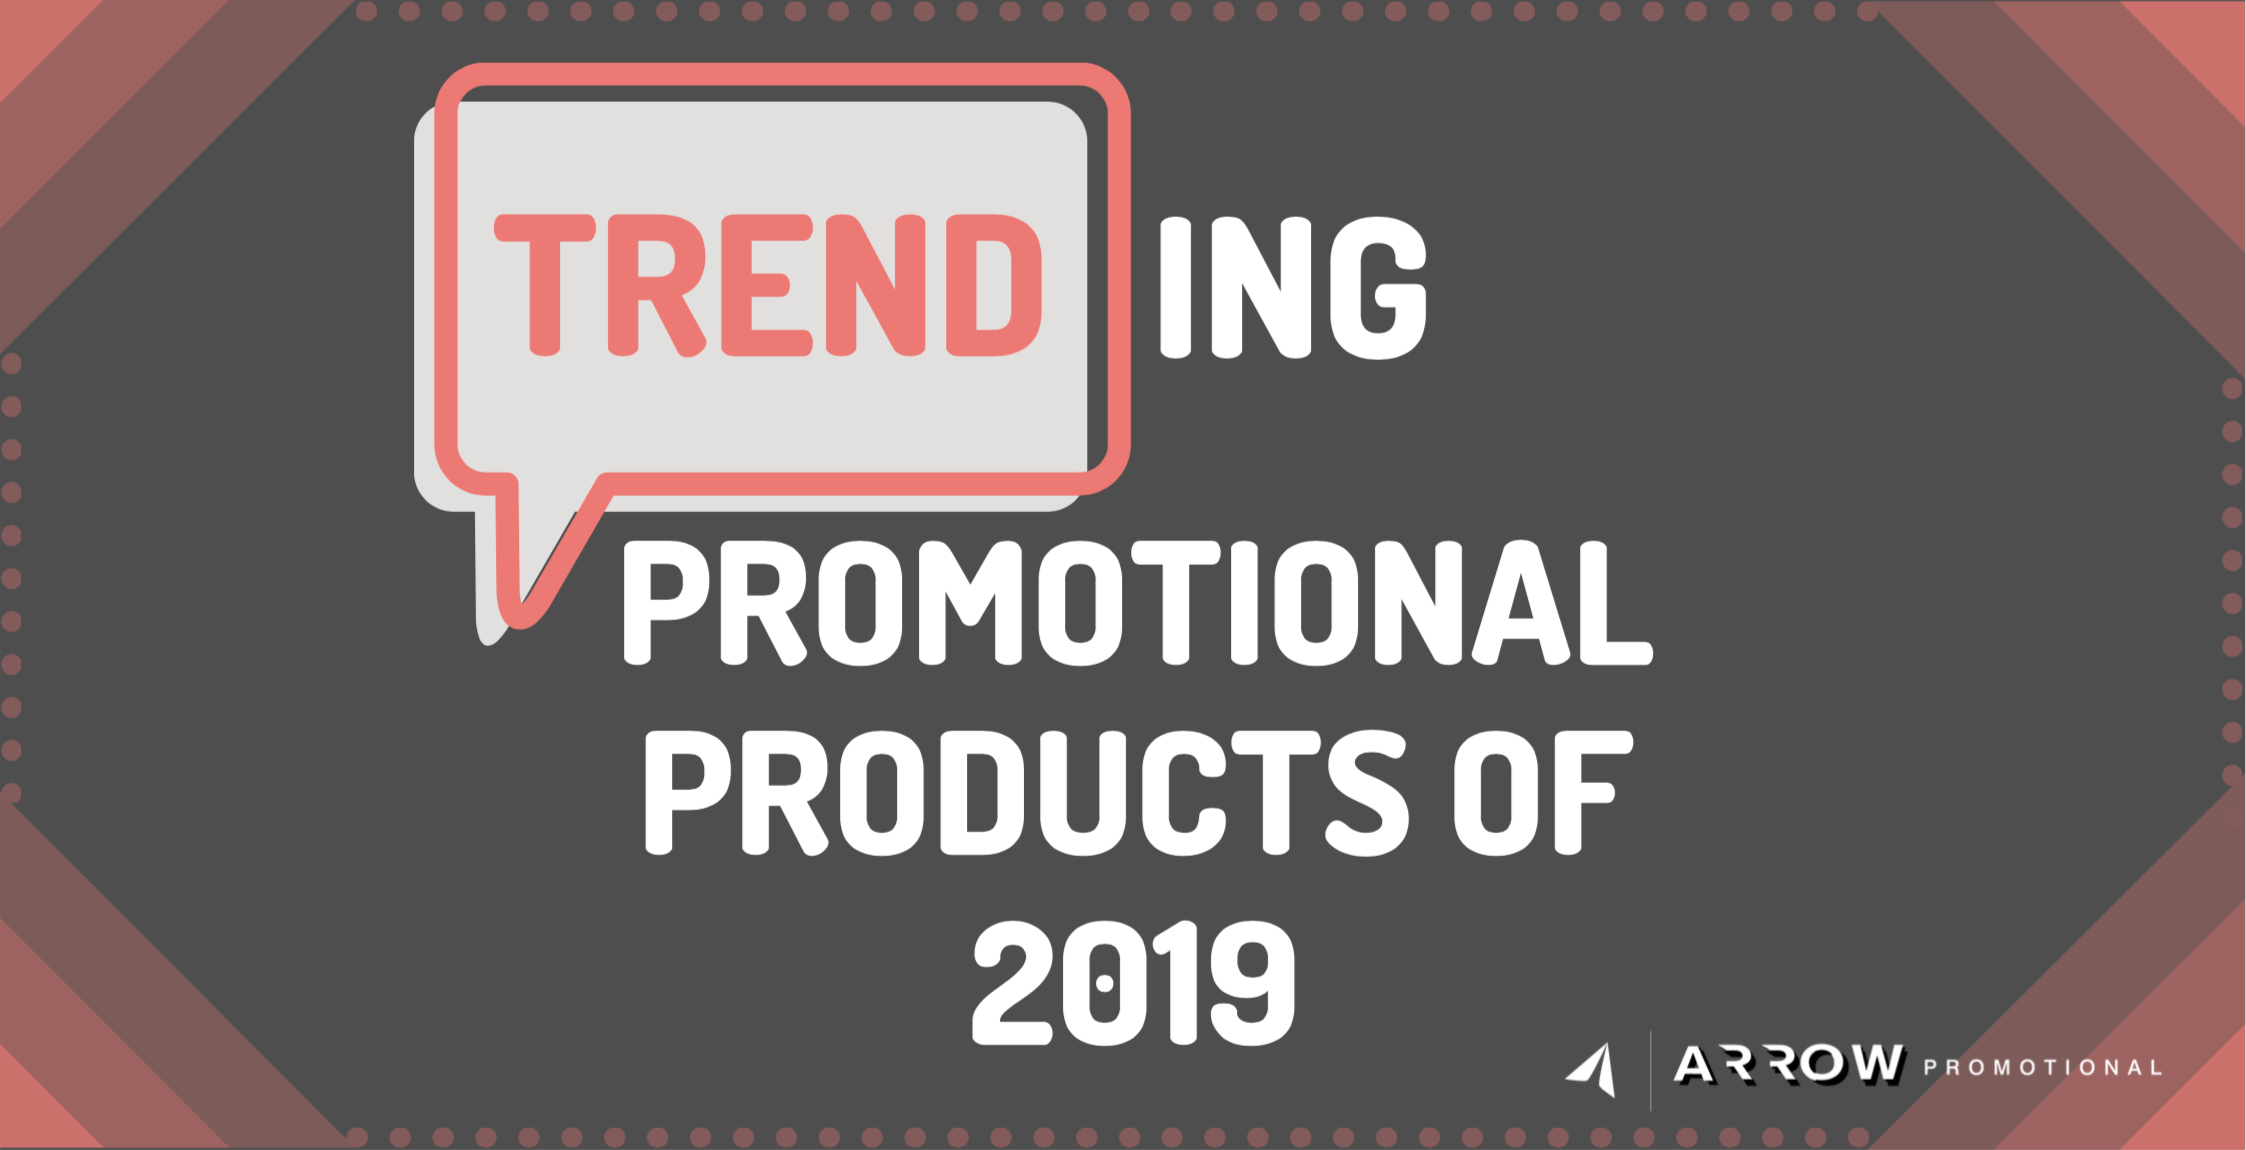 <img src=“trendingpp.jpg” alt=“trending promotional products of 2019” title=“promotional products of 2019 trending”>